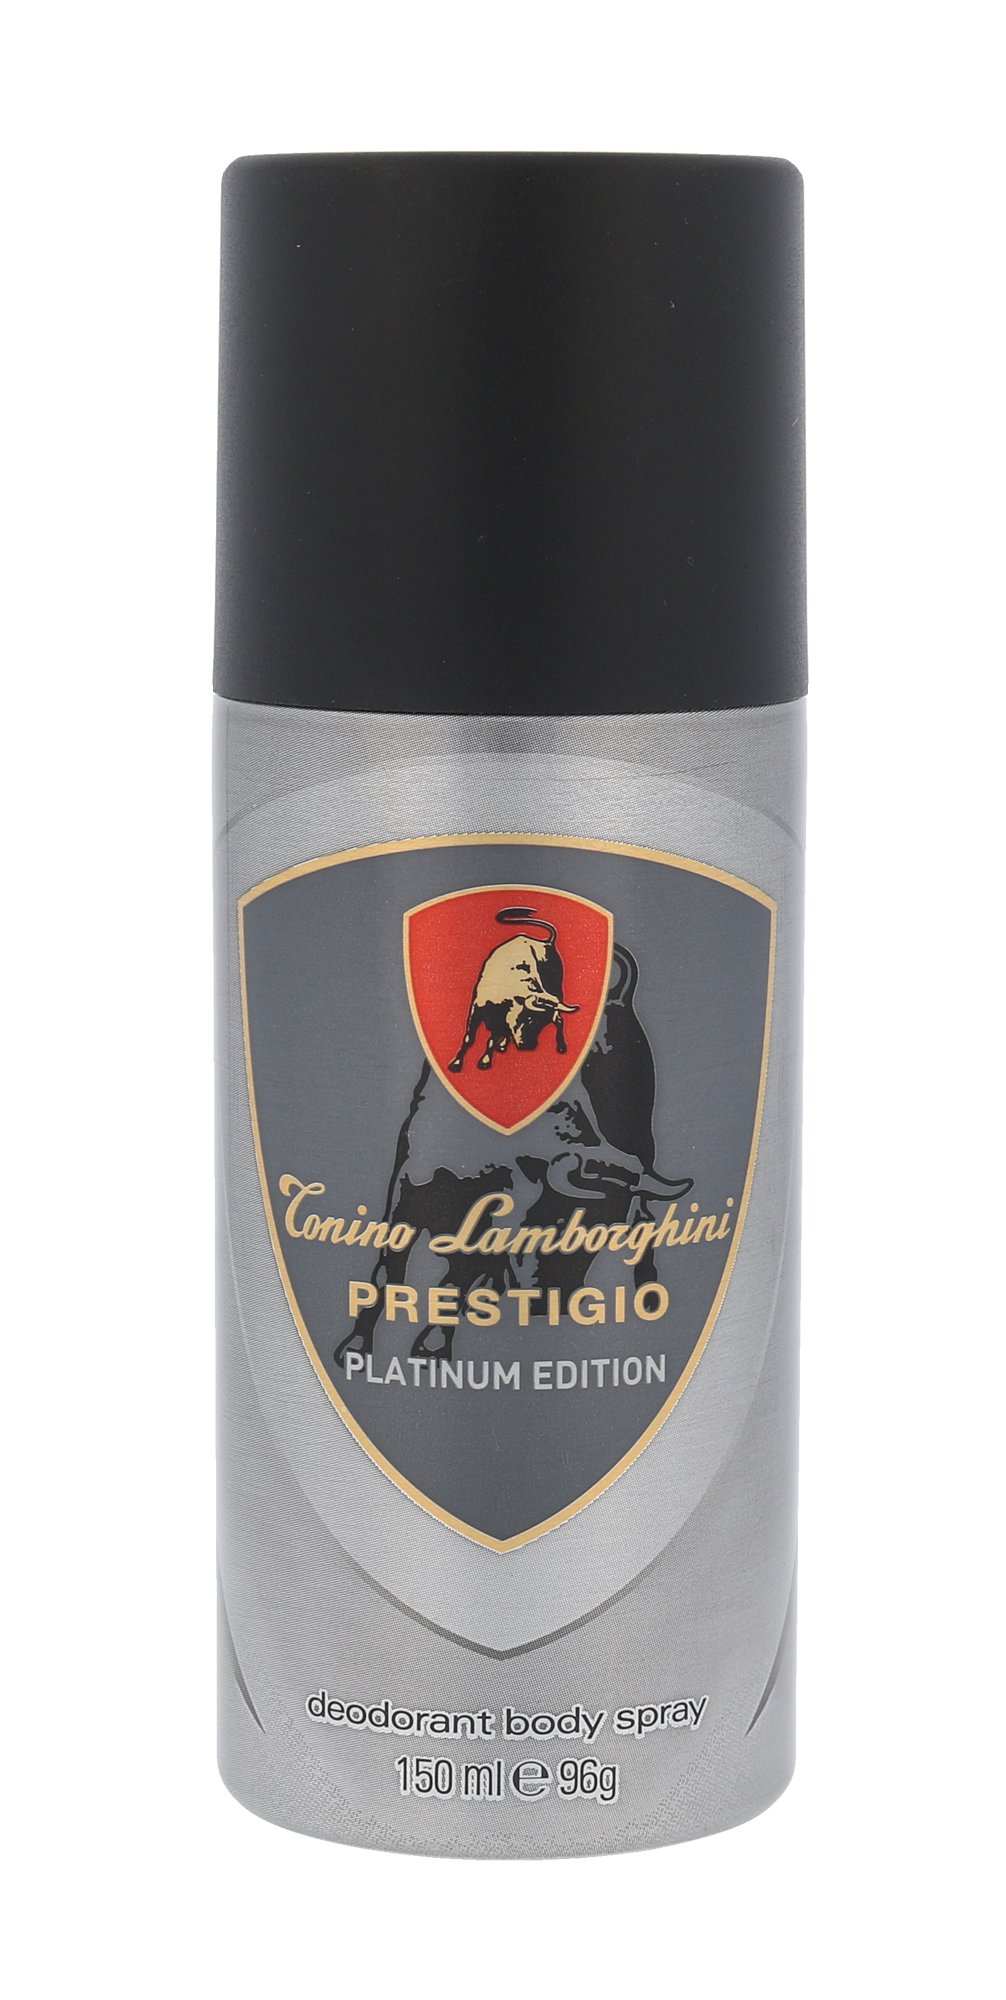 Lamborghini Prestigio Platinum Edition, Deodorant 150ml